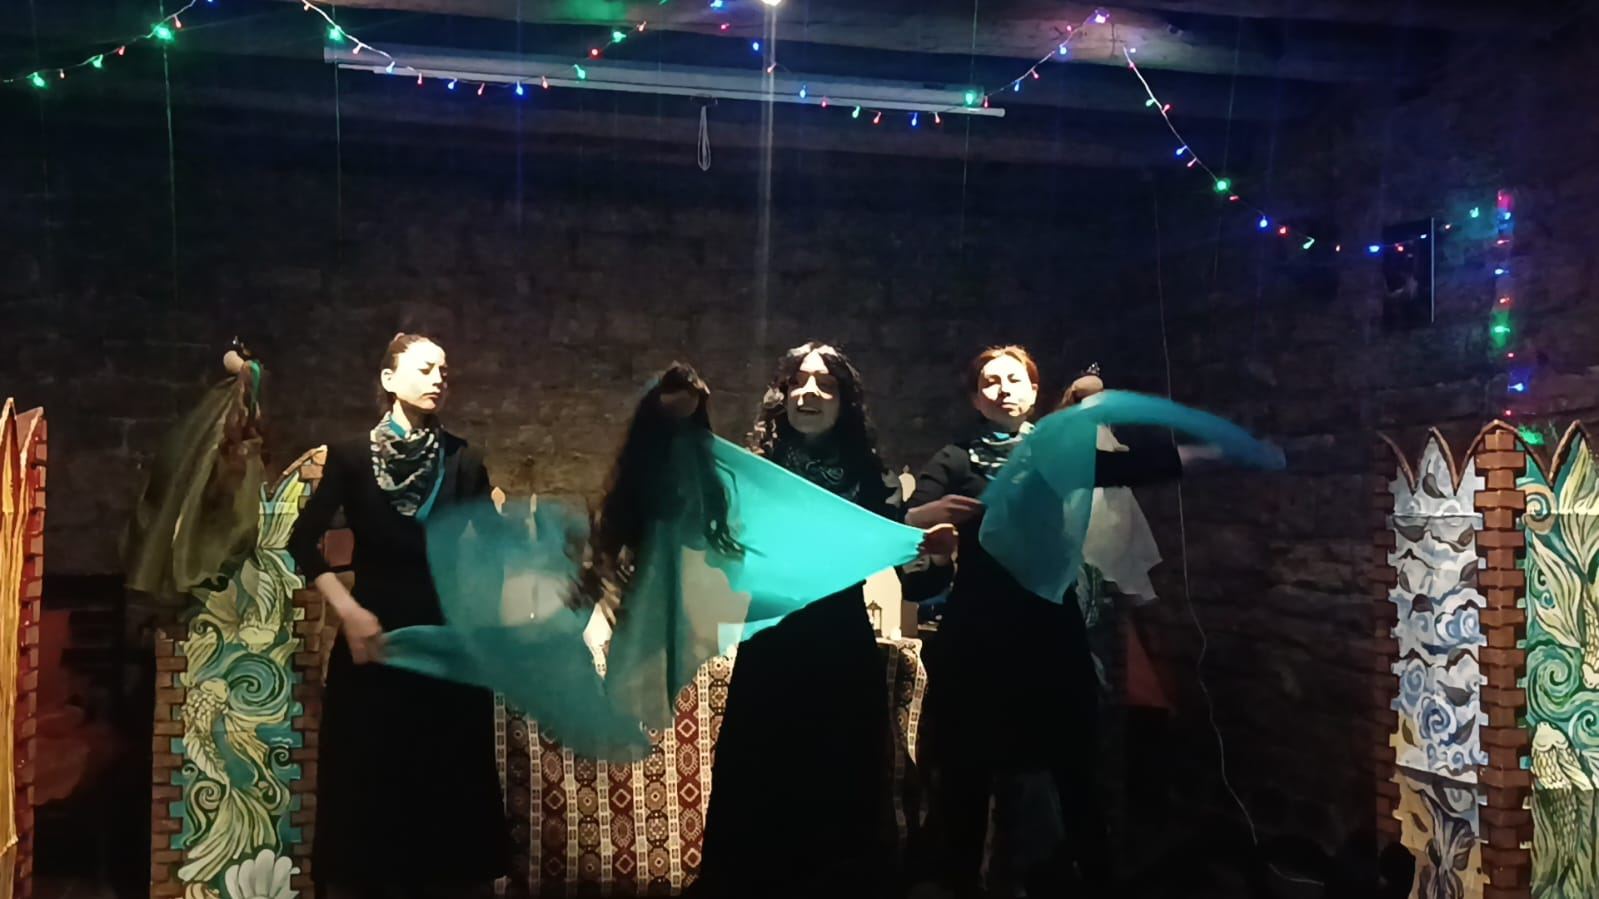 В Баку состоялась премьера спектакля о мифологических персонажах Новруза (ФОТО/ВИДЕО)